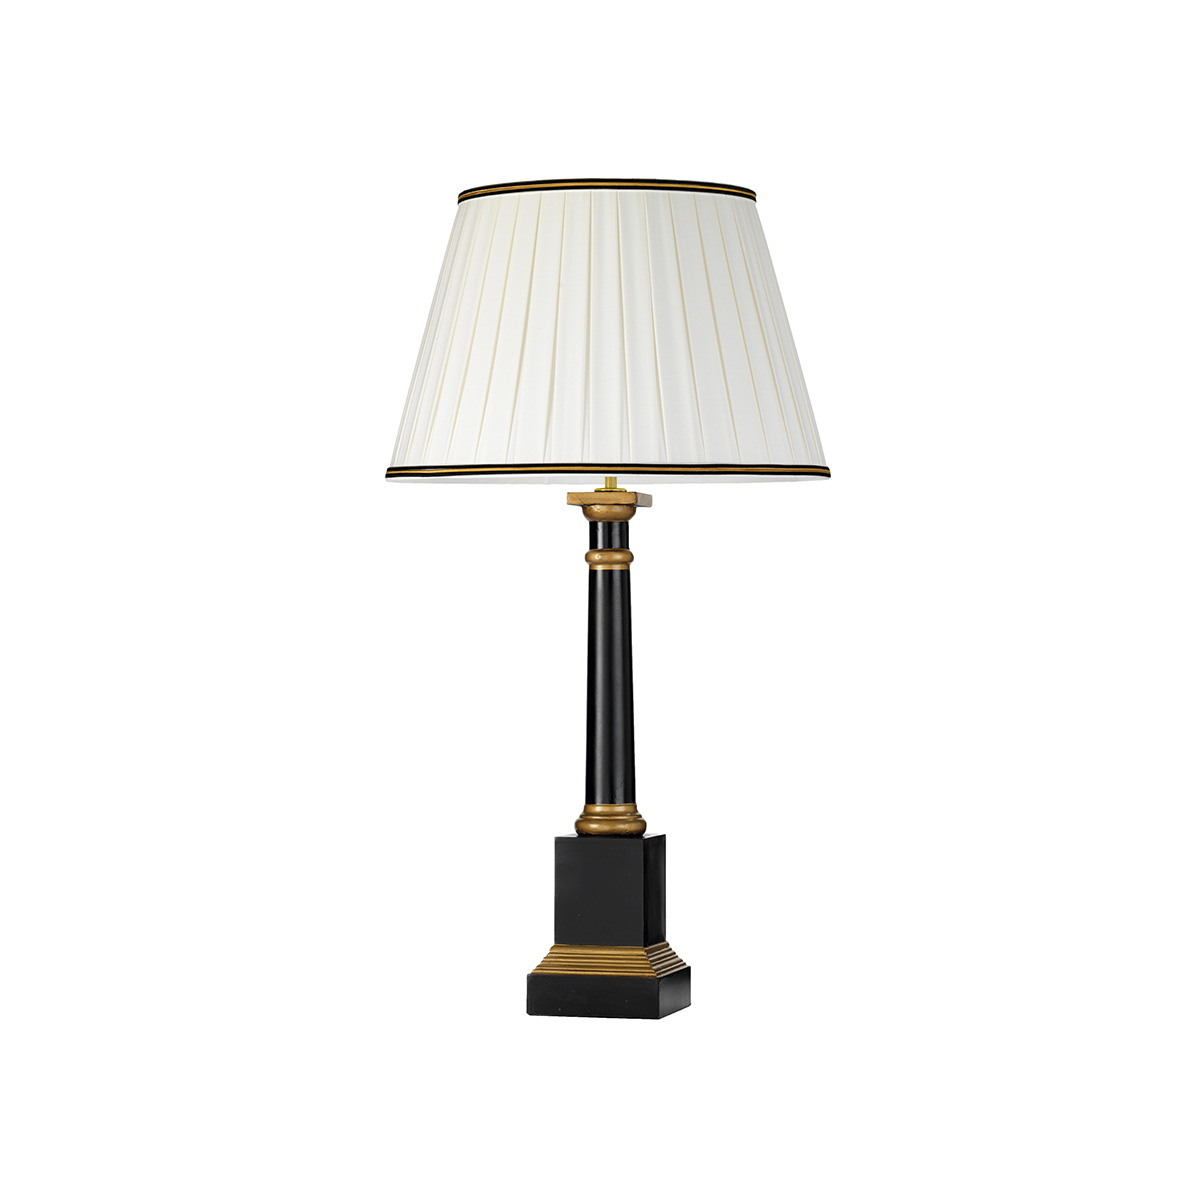 Настольная лампа DL-PERONNE-TL. Бренд: Elstead Lighting. Настольные лампы